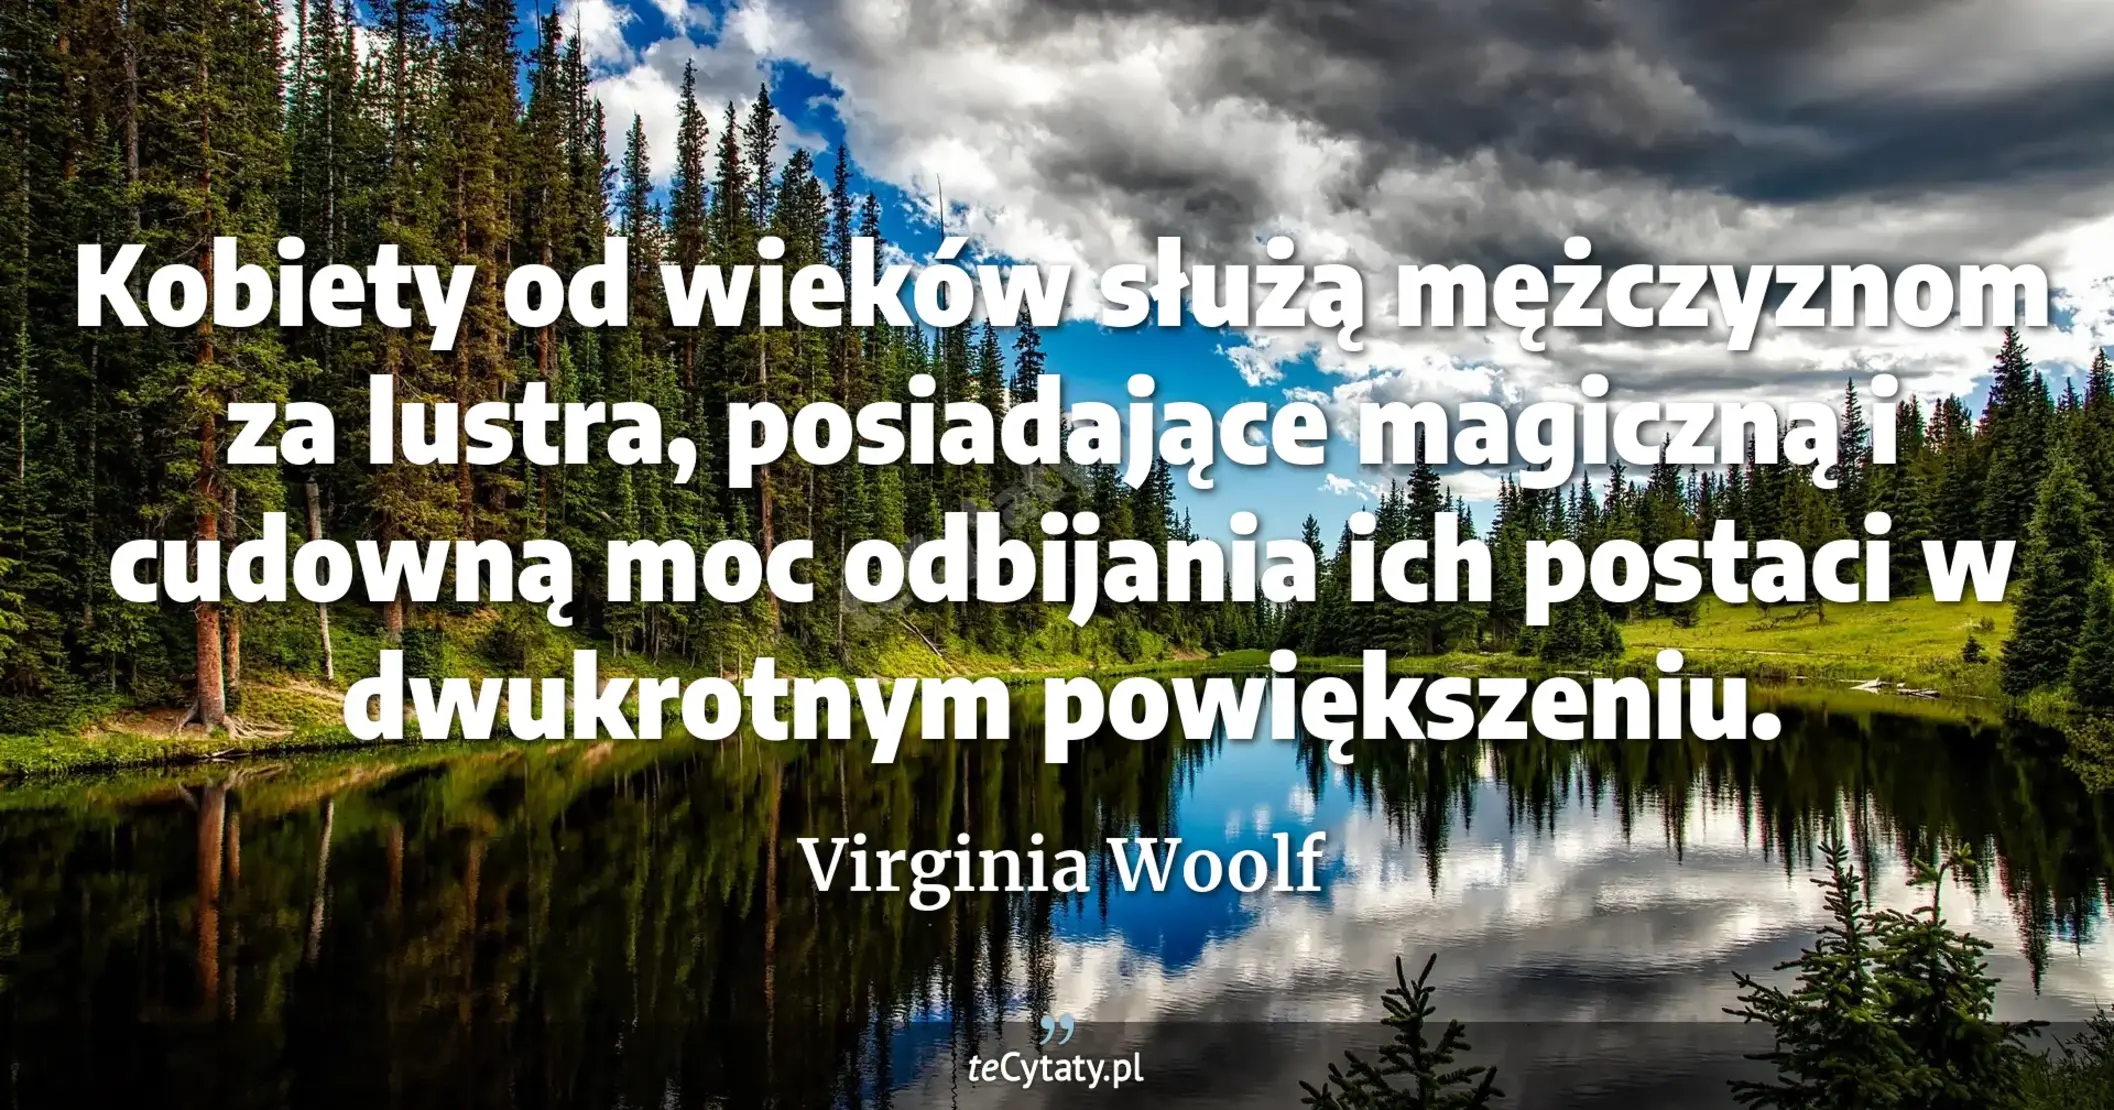 Kobiety od wieków służą mężczyznom za lustra, posiadające magiczną i cudowną moc odbijania ich postaci w dwukrotnym powiększeniu. - Virginia Woolf